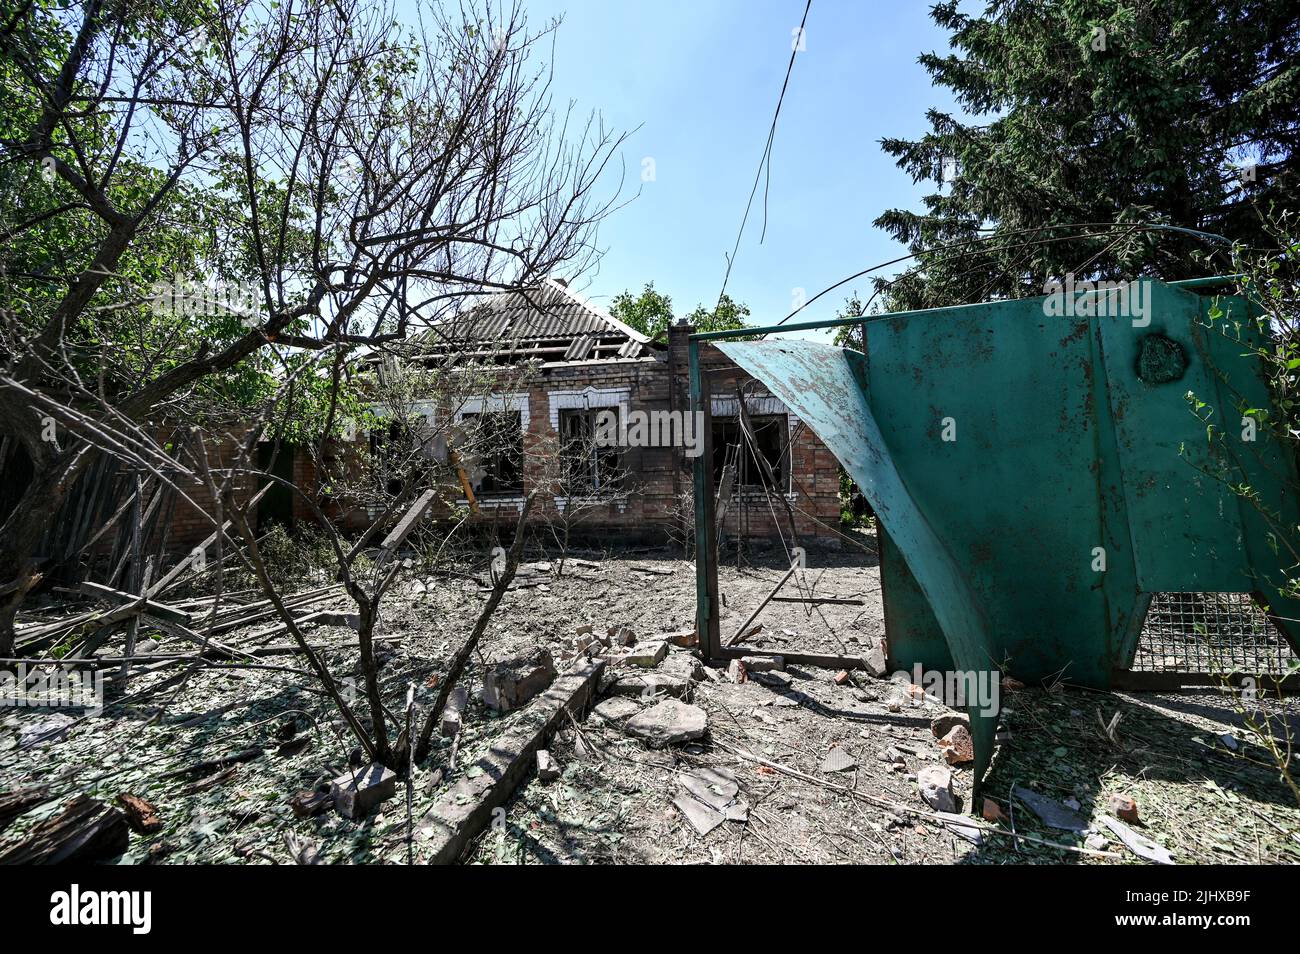 NIKOPOL, UKRAINE - 20. JULI 2022 - Ein zerstörtes Haus, in dem ein 70-jähriger Mann und eine 65-jährige Frau infolge des russischen Beschusses starben, ist in der Abbildung dargestellt Stockfoto